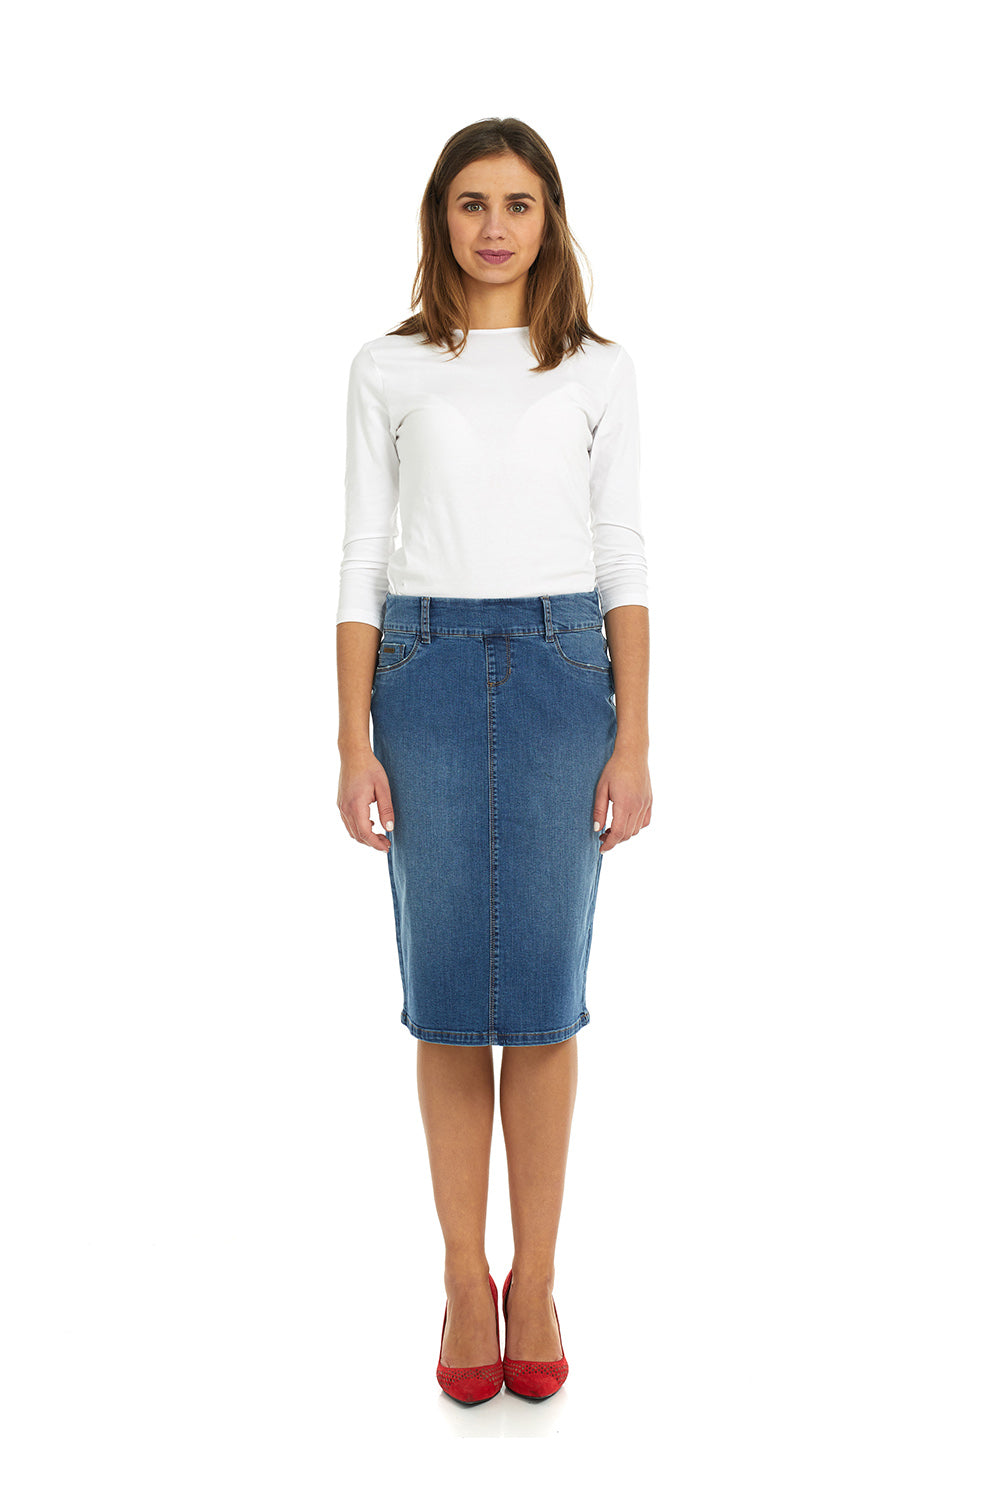 Esteez BOSTON Skirt - Below the knee Straight Jean Skirt for women